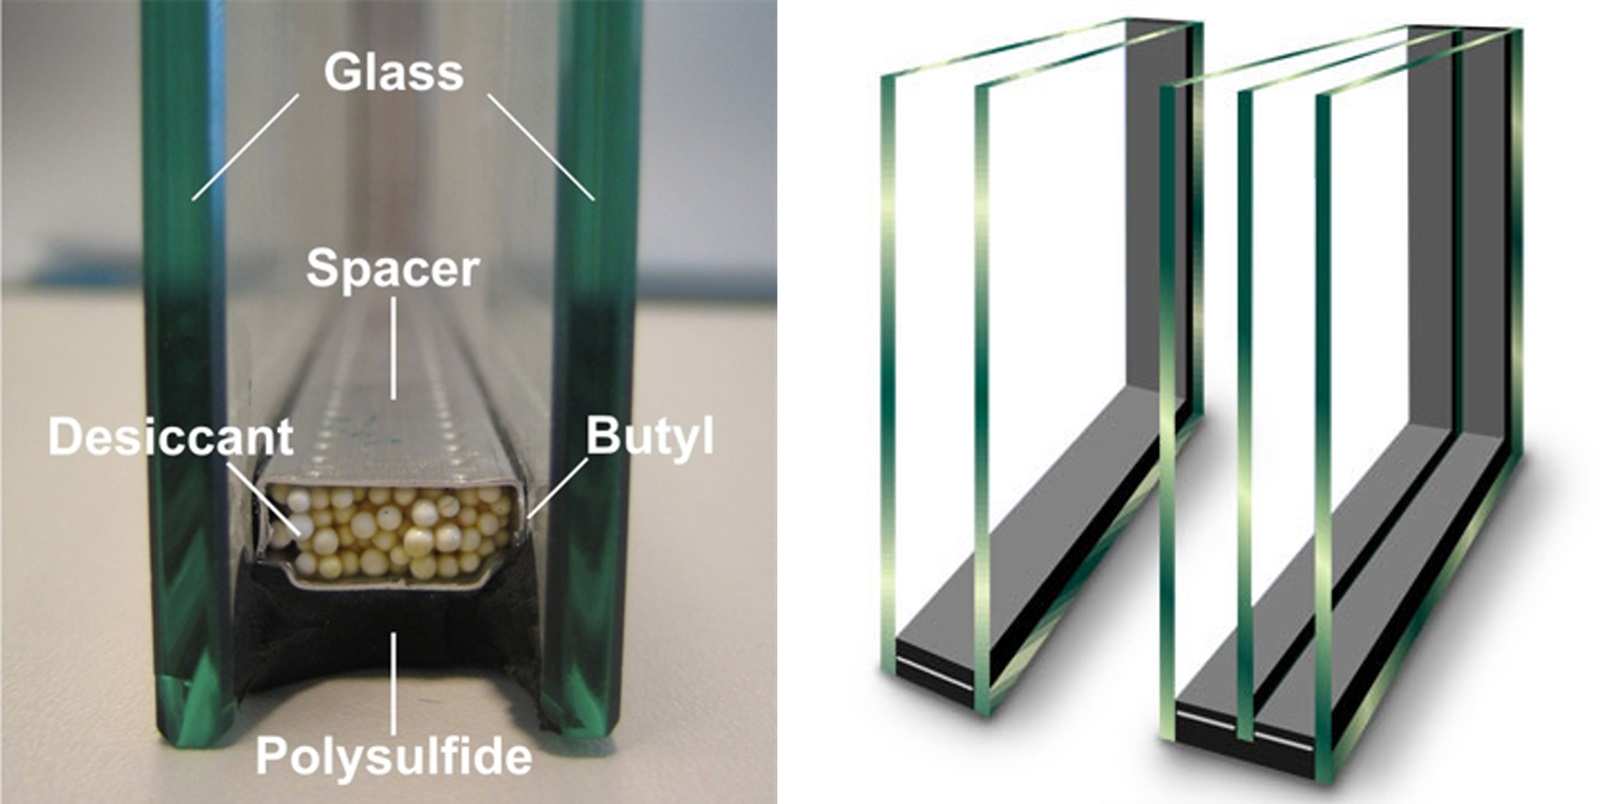 Kính cách nhiệt sử dụng các loại khí chuyên dụng giữa hai tấm kính